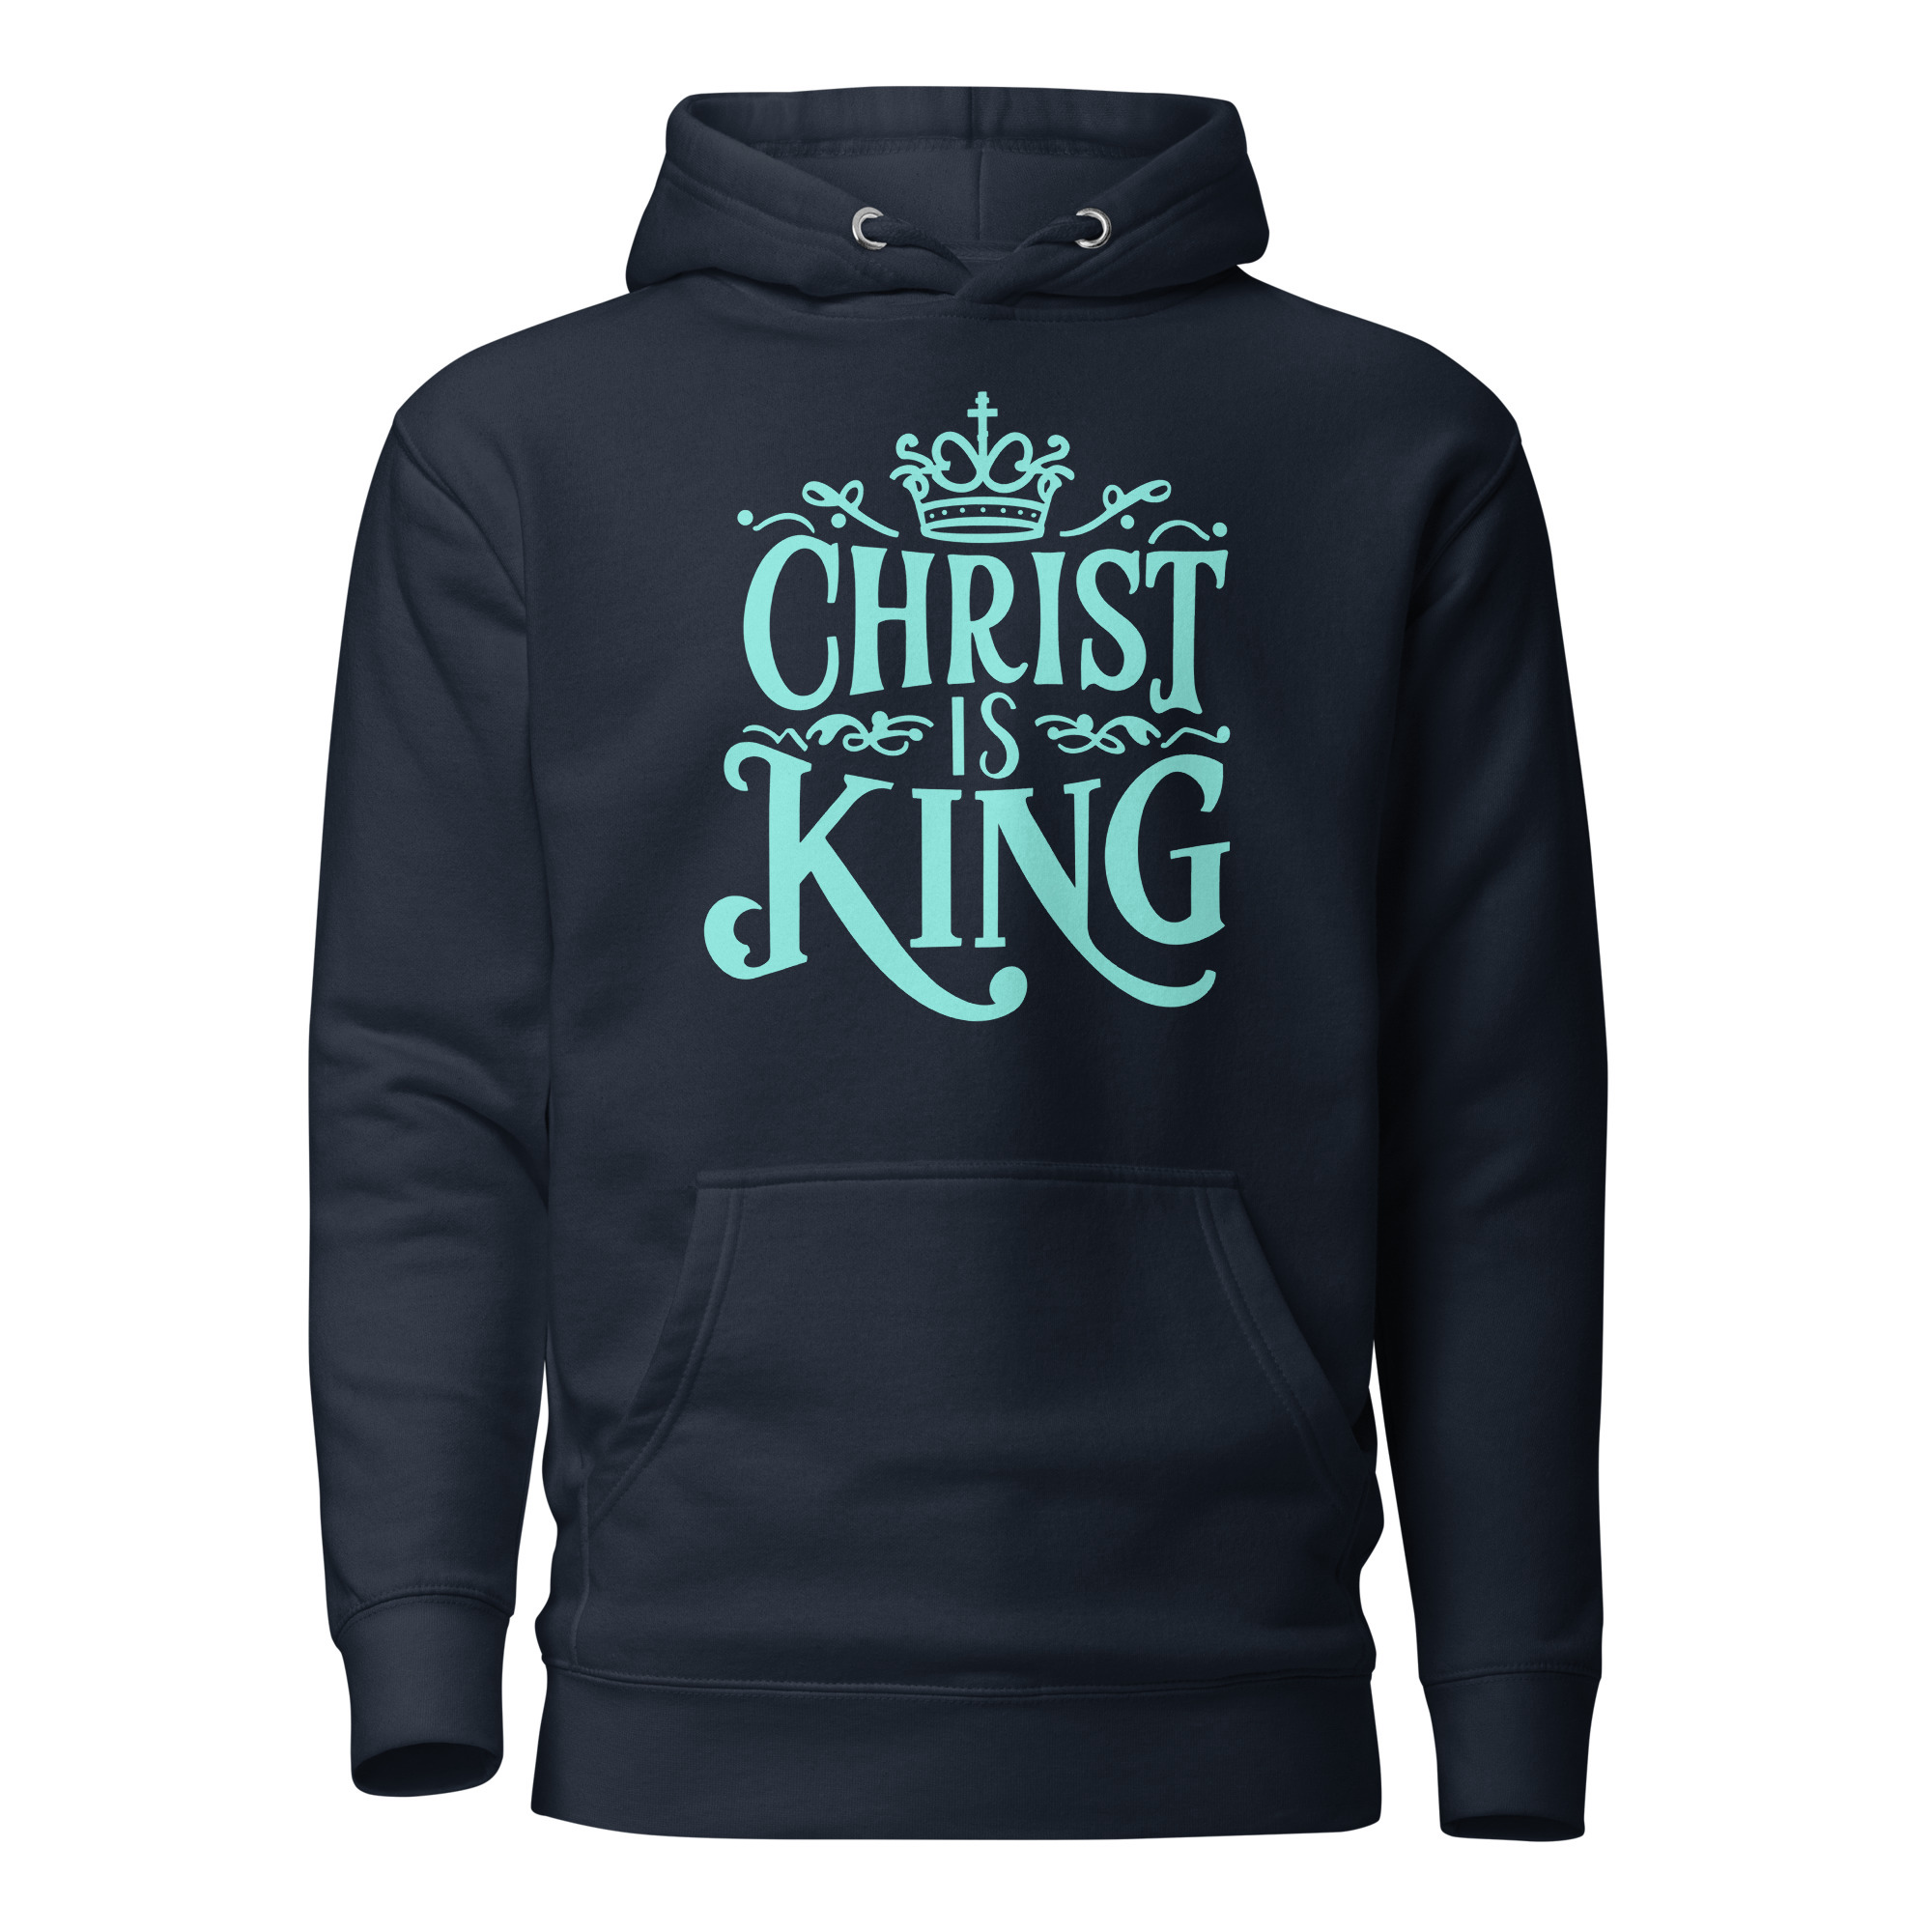 Christ is King 2.0 Hoodie - Navy Blazer / L